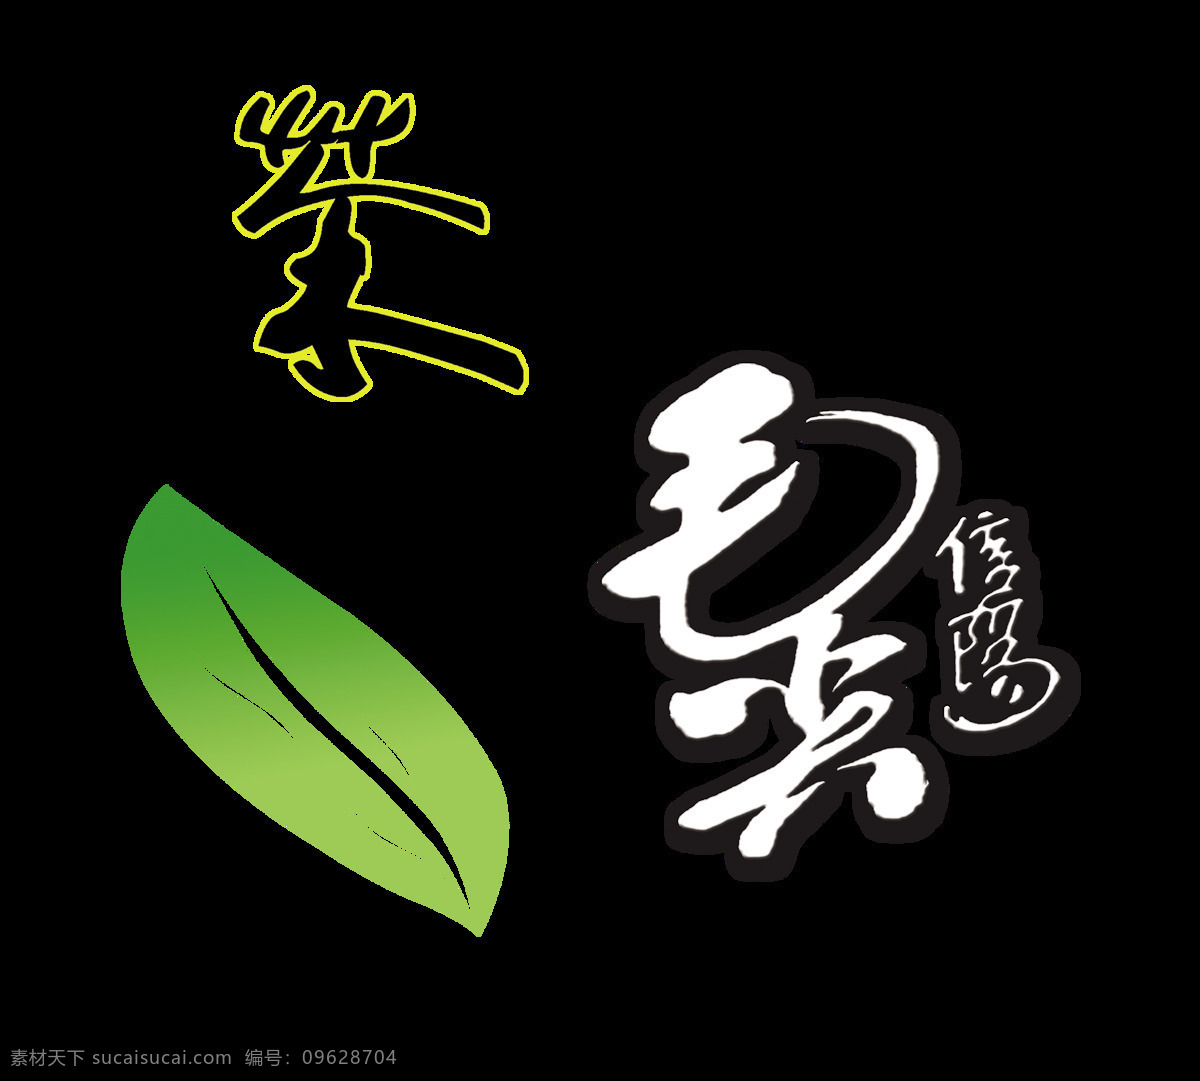 毛尖 茶艺 术 字 字体 茶叶 广告 宣传 促销 毛尖茶 茶道 中国风 海报